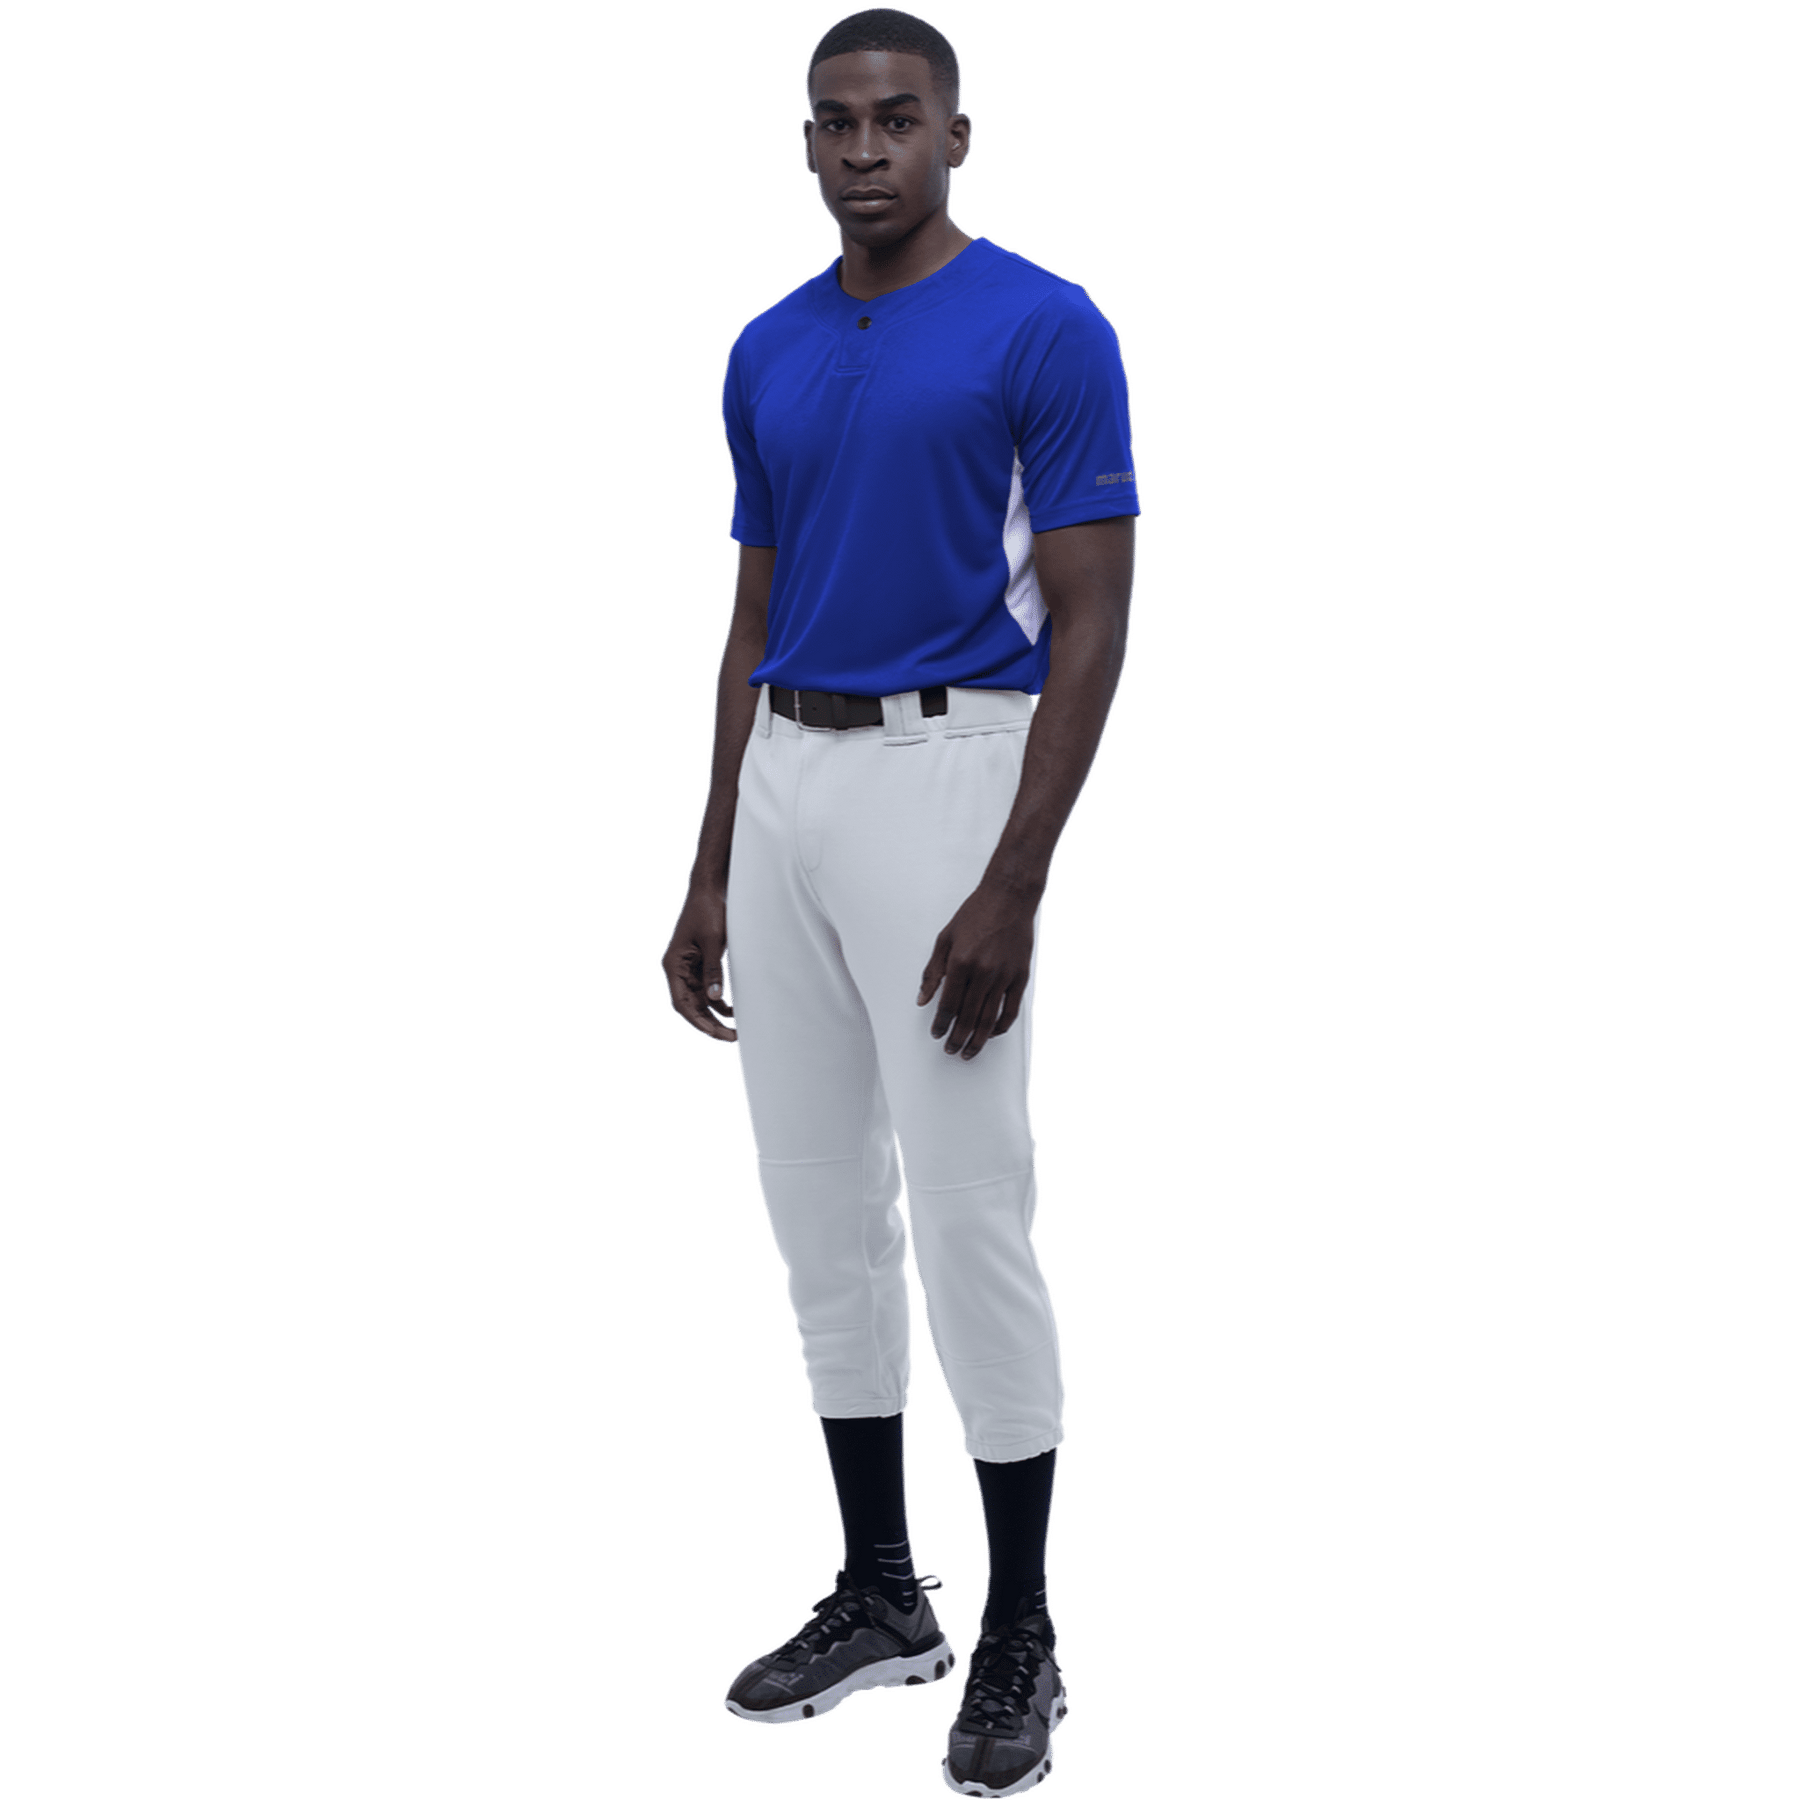 tweener baseball pants